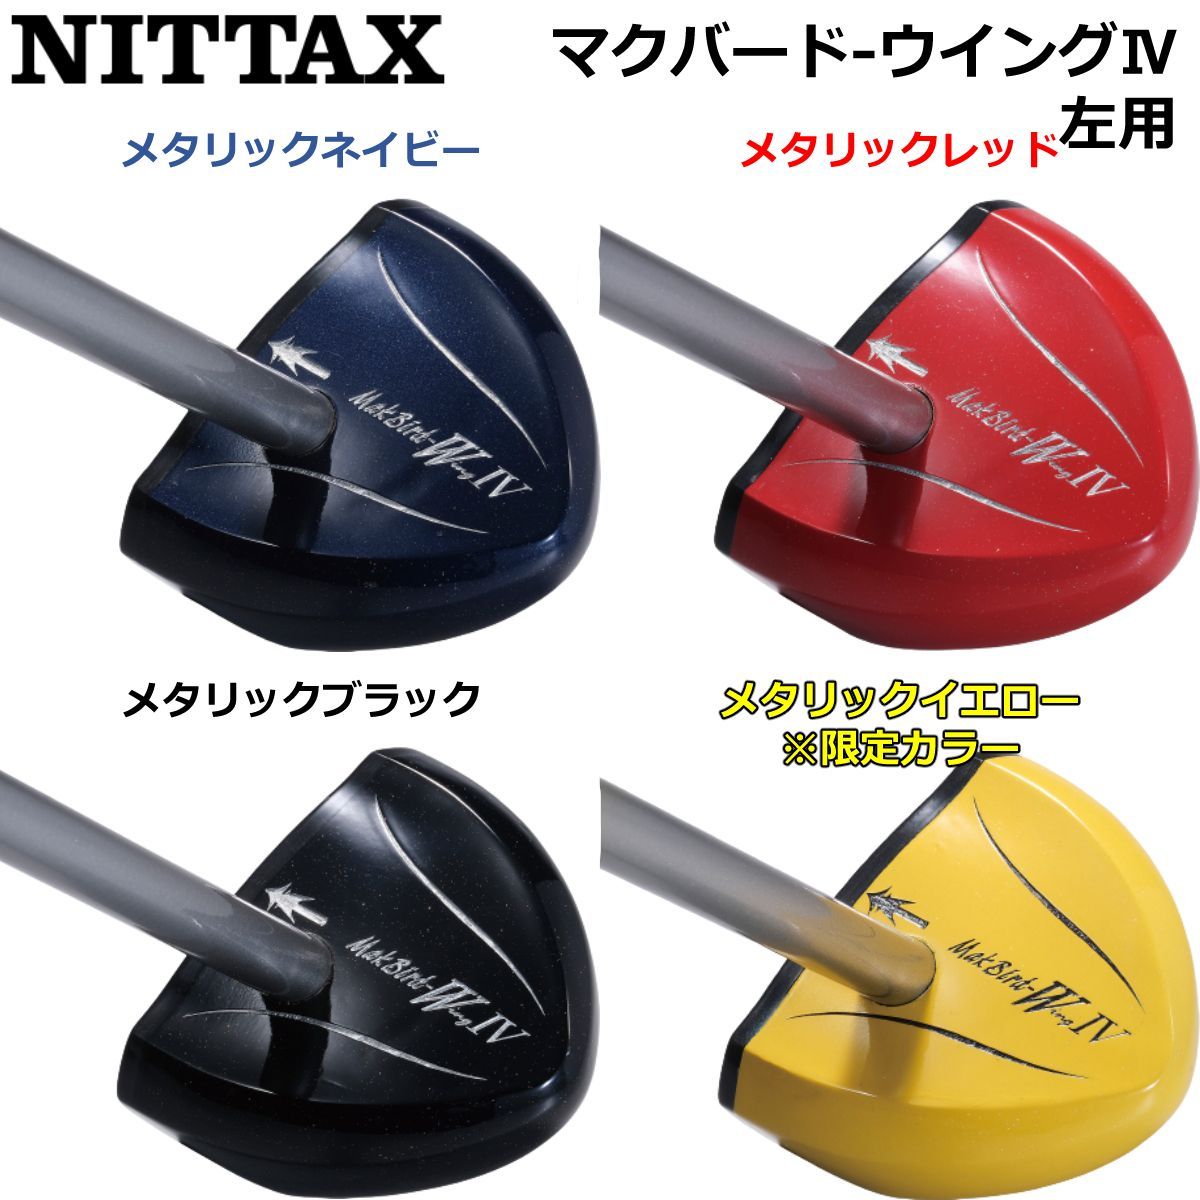 NITTAX パークゴルフクラブ マクバード-ウイングⅢ メタリックブラック 